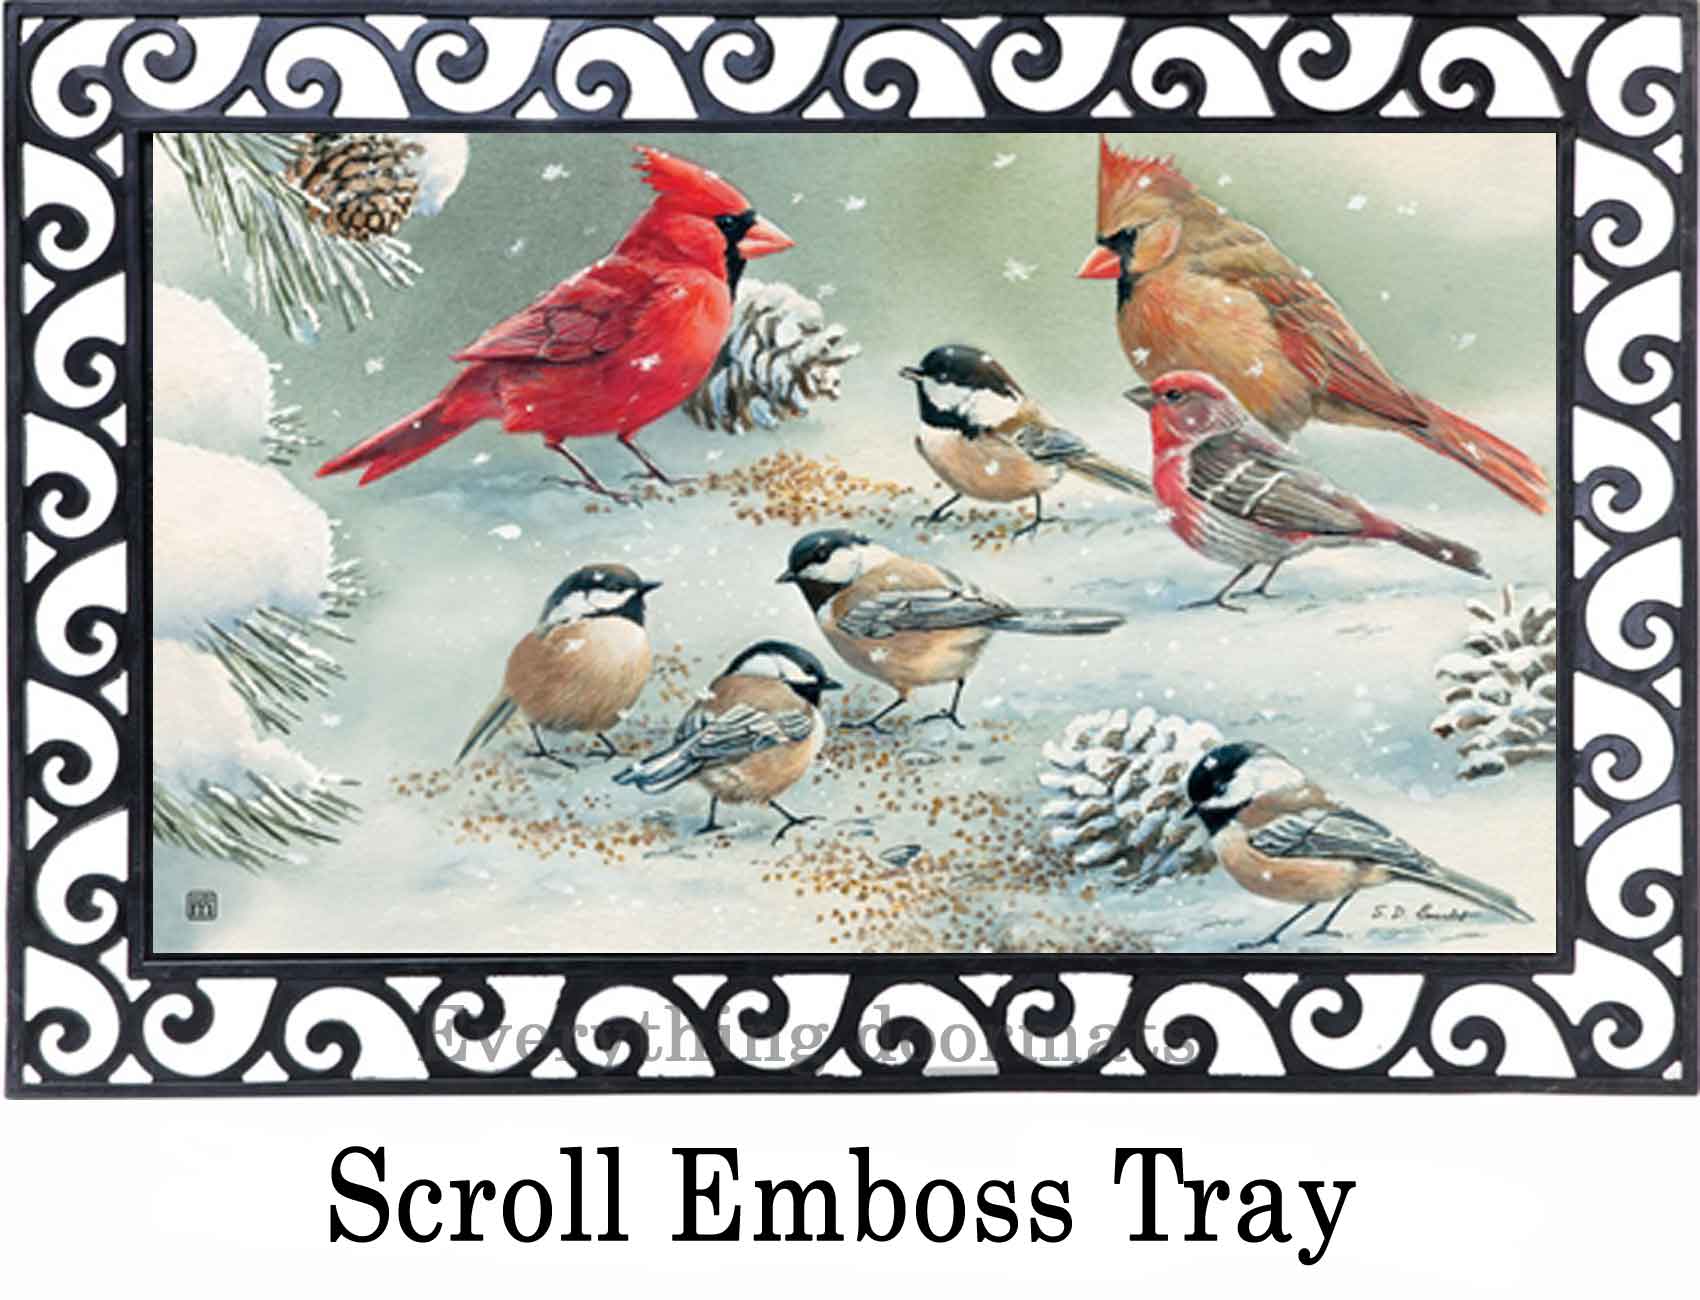 https://www.everythingdoormats.com/images/products/winter-bird-feeding-matmates-insert-doormat-in-outdoor-scroll-emboss-doormat-tray.jpg